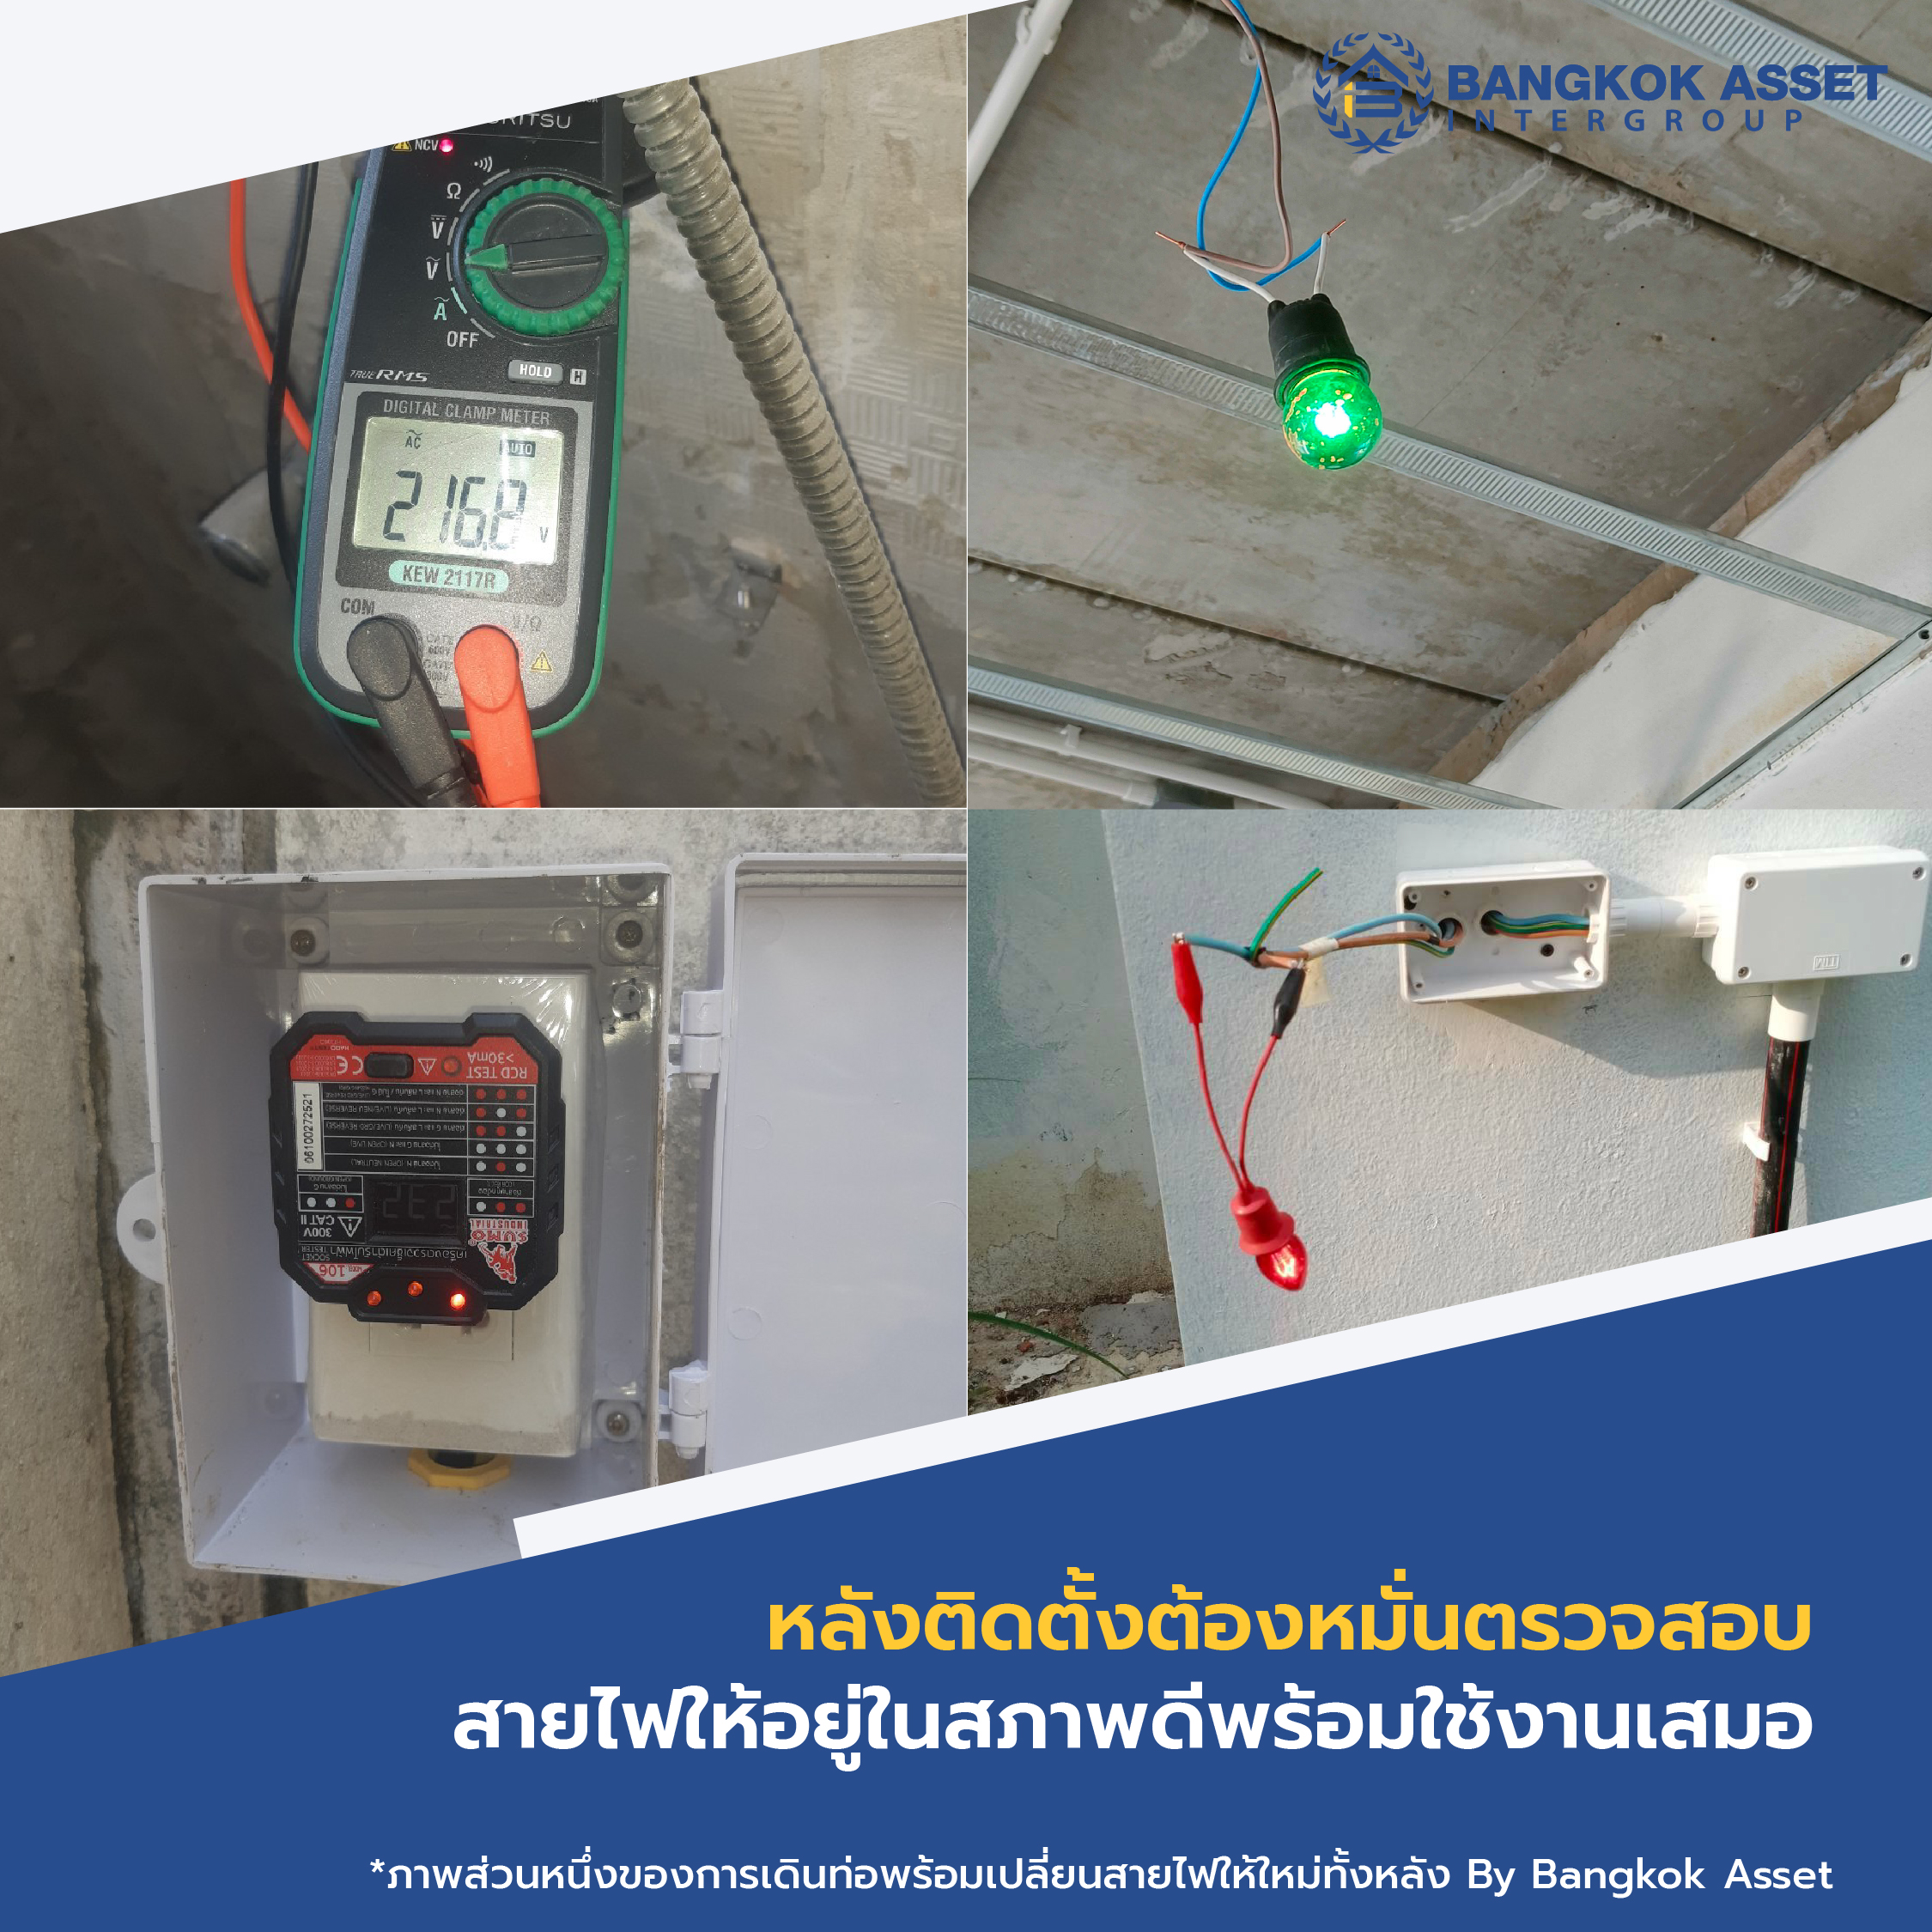 การเลือกใช้สายไฟฟ้าภายในบ้านให้ถูกประเภท และปลอดภัย-06.jpg